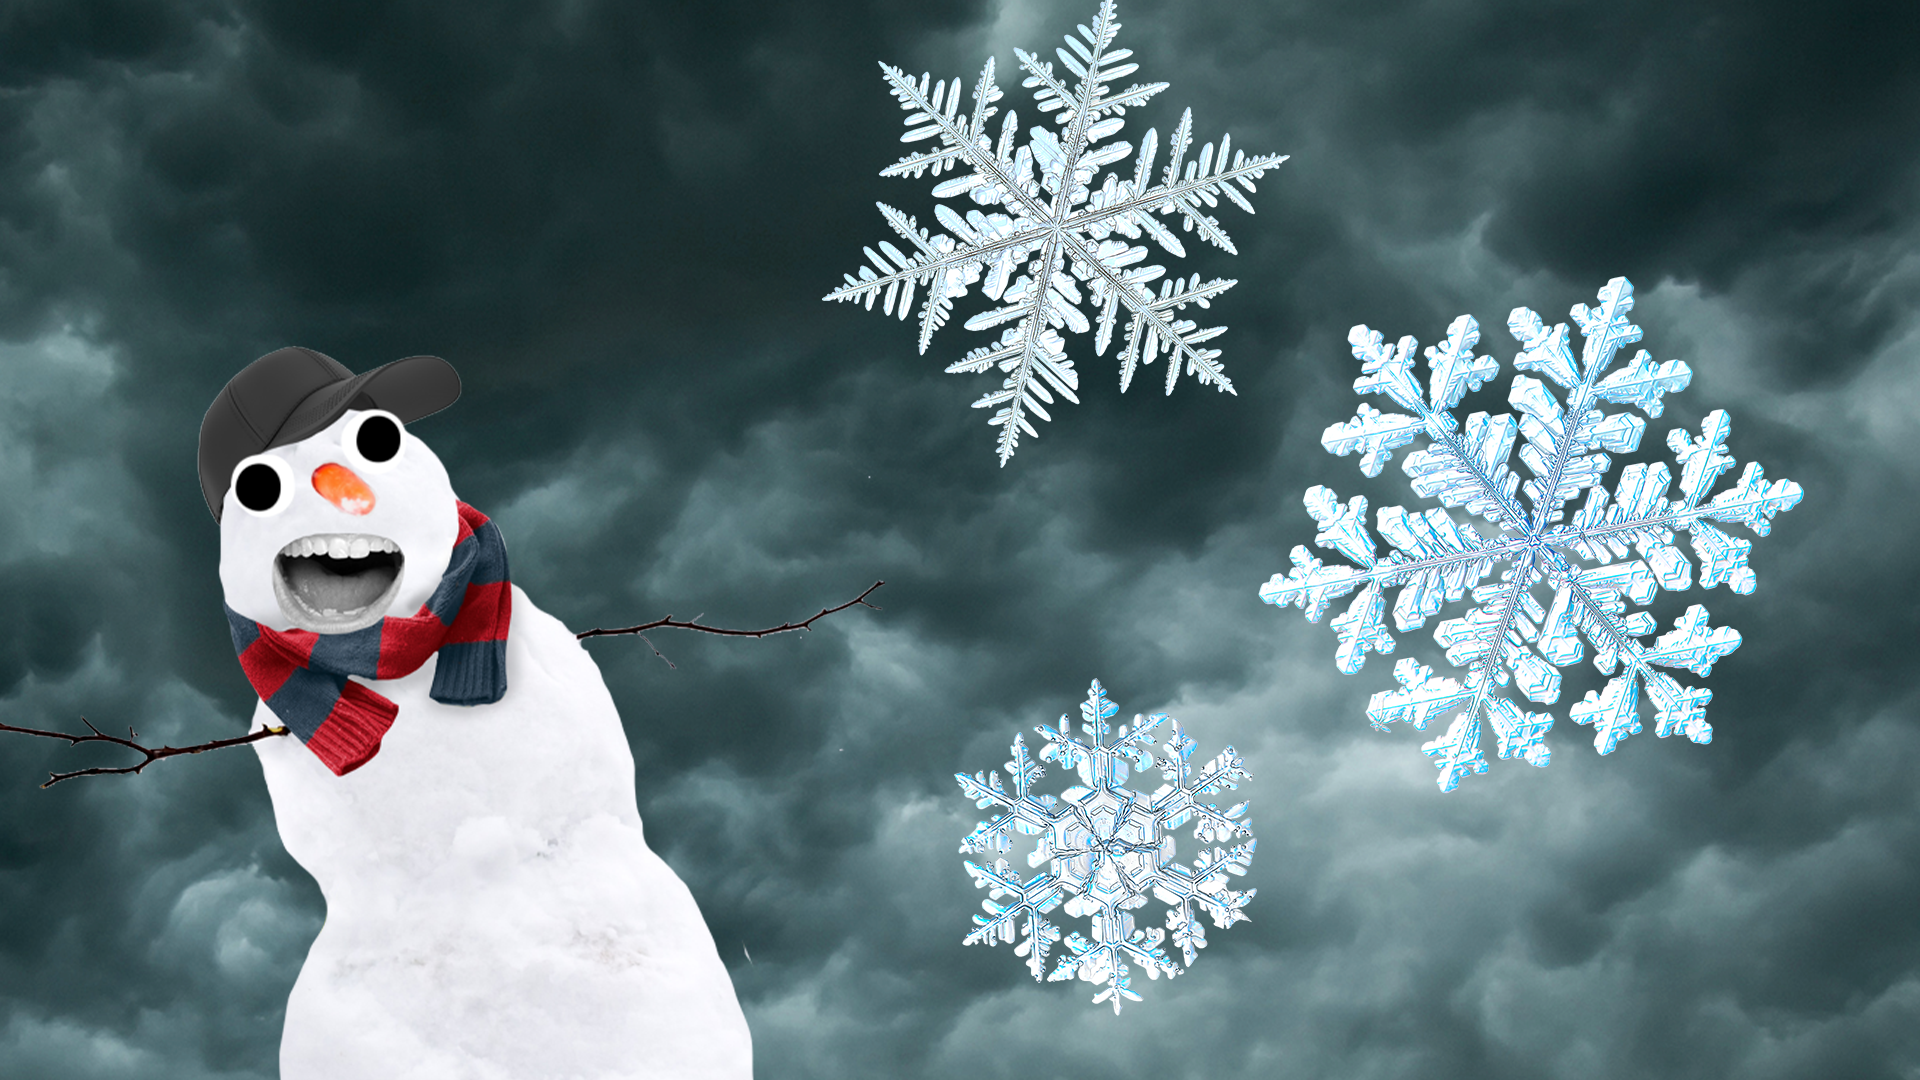 Stormy, snowy scene with Beano snowman